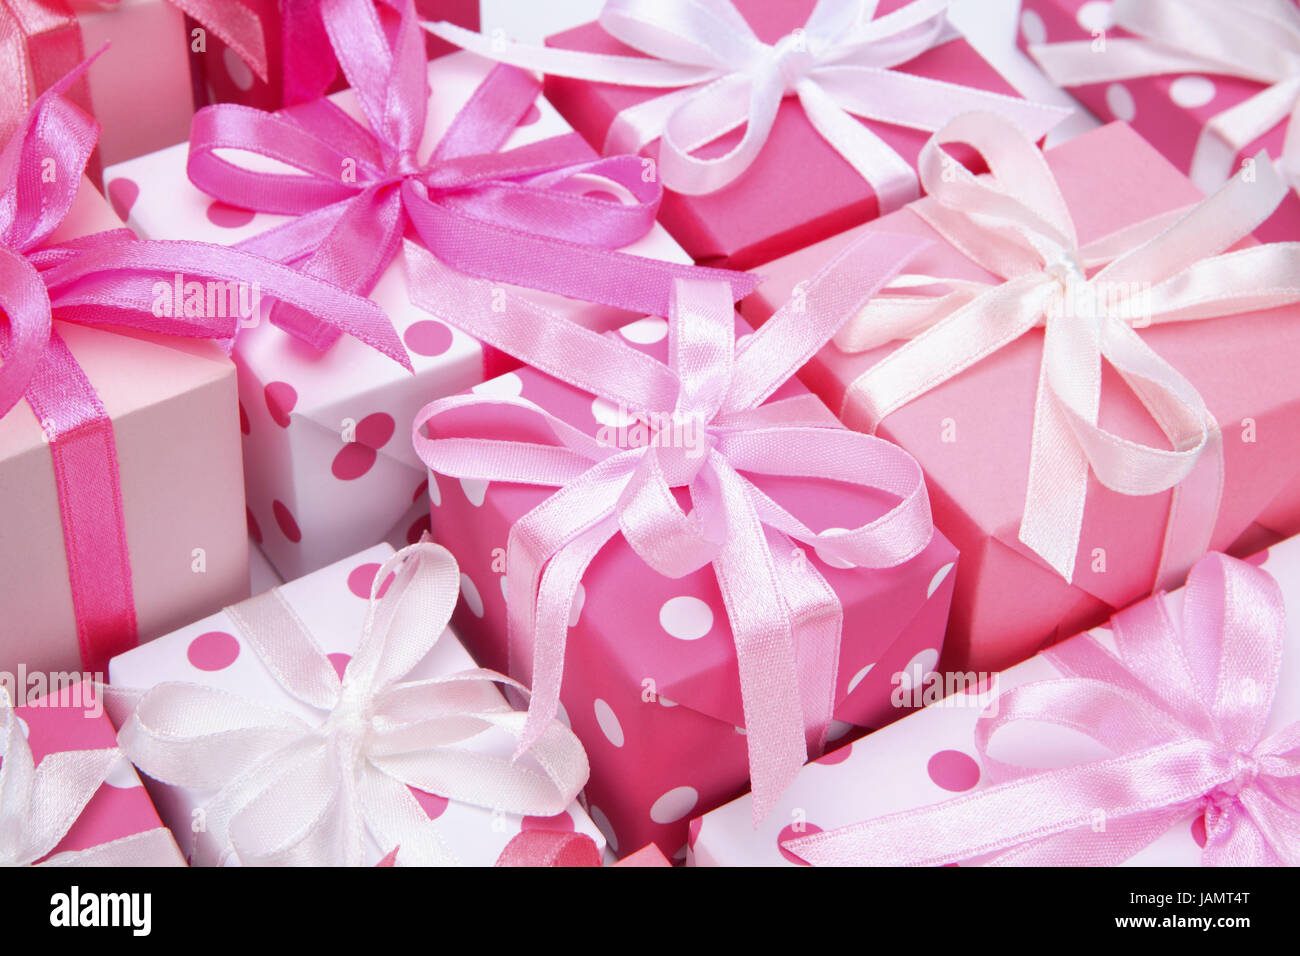 https://c8.alamy.com/compde/jamt4t/geschenk-paket-rosa-weihnachten-valentinstag-geburtstag-muttertag-jubilaum-valentinsgeschenke-geburtstagsgeschenke-geschenke-zum-muttertag-weihnachtsgeschenke-klein-suss-prasentiert-prasentiert-packungen-liebevoll-schleifen-spot-punkte-gepunktet-erzielte-hell-vielzahl-viele-symbol-geben-verteilung-der-geschenke-uberraschung-prejoy-tuning-farbe-farbe-rosa-weiss-rosa-weiss-studio-hintergrund-jamt4t.jpg